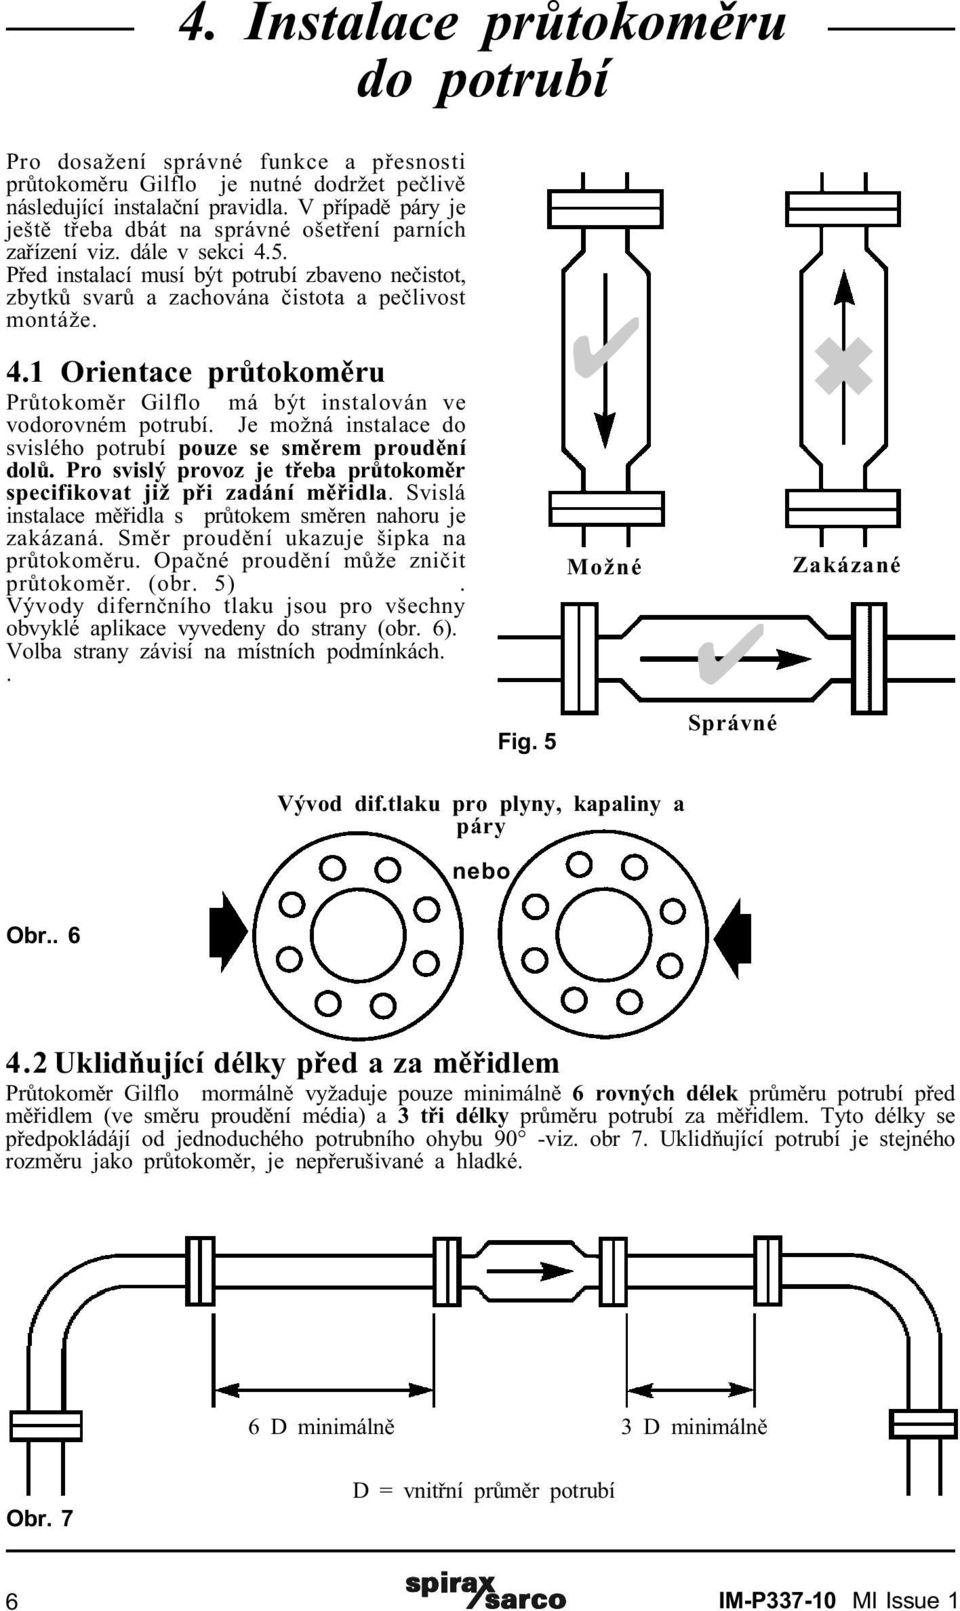 4.1 Orientace prùtokomìru Prùtokomìr má být instalován ve vodorovném potrubí. Je možná instalace do svislého potrubí pouze se smìrem proudìní dolù.